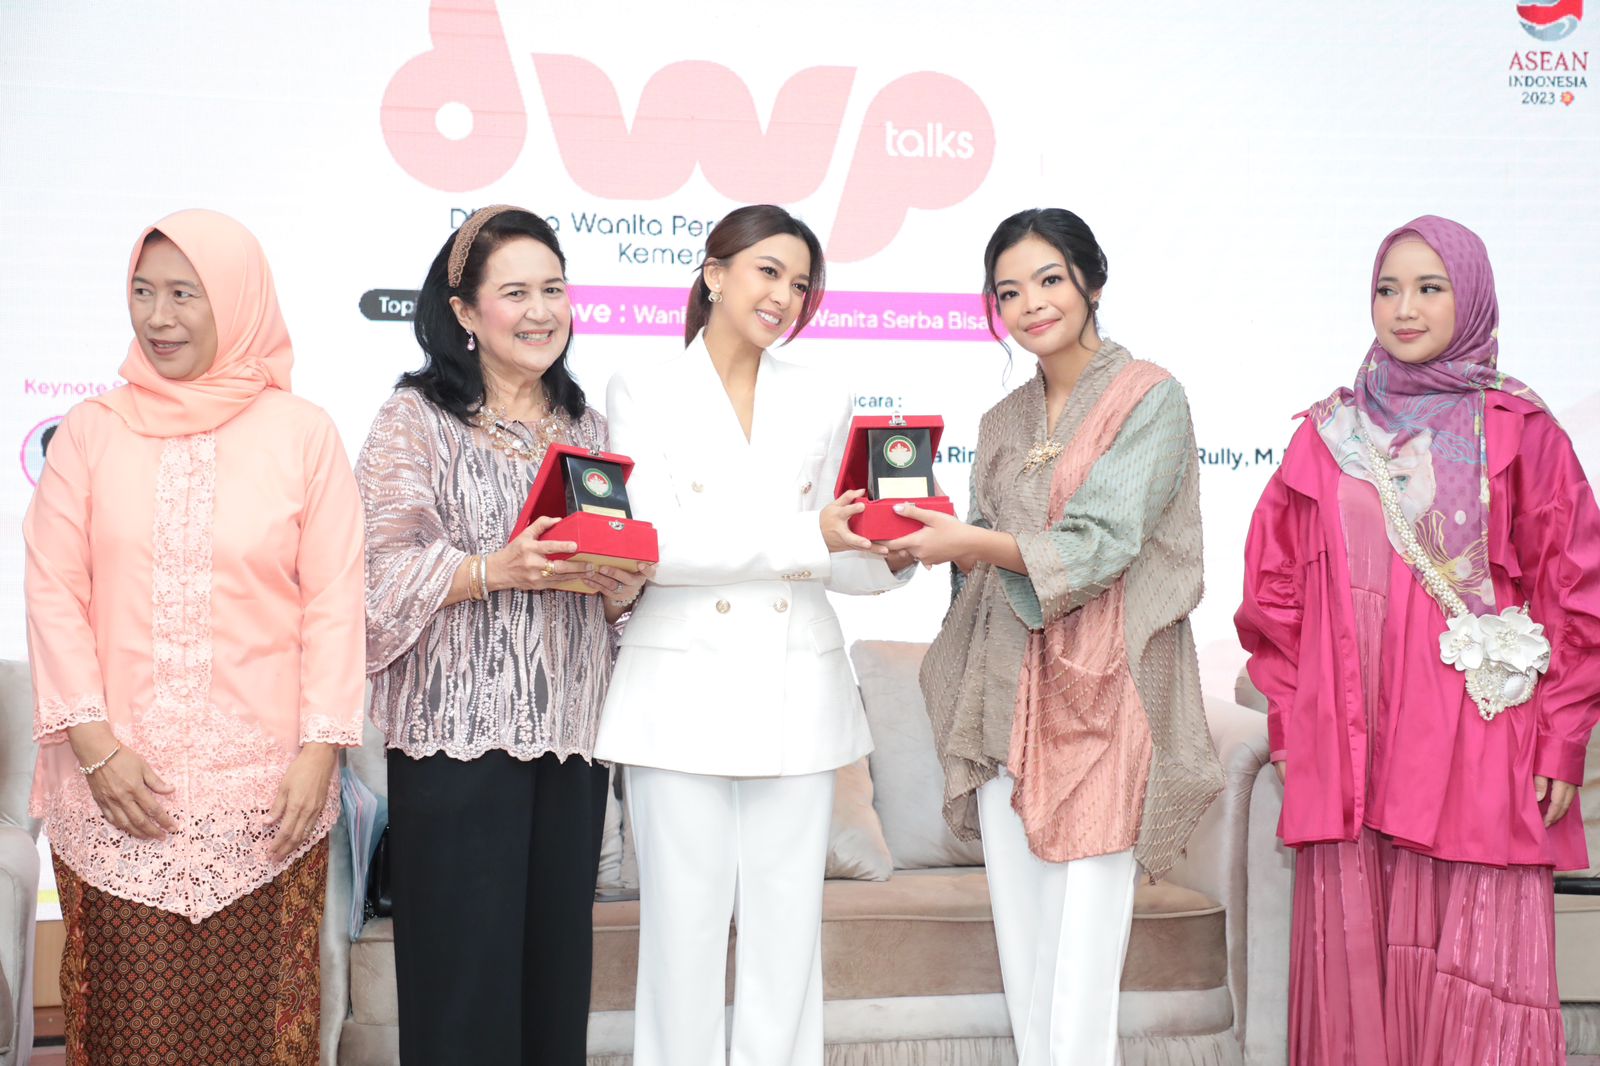 Buka DWP Talks, Penasihat DWP Kemenpora Niena Dito Ariotedjo Sampaikan Pentingnya Peran Wanita Dalam Memahami dan Percaya Diri